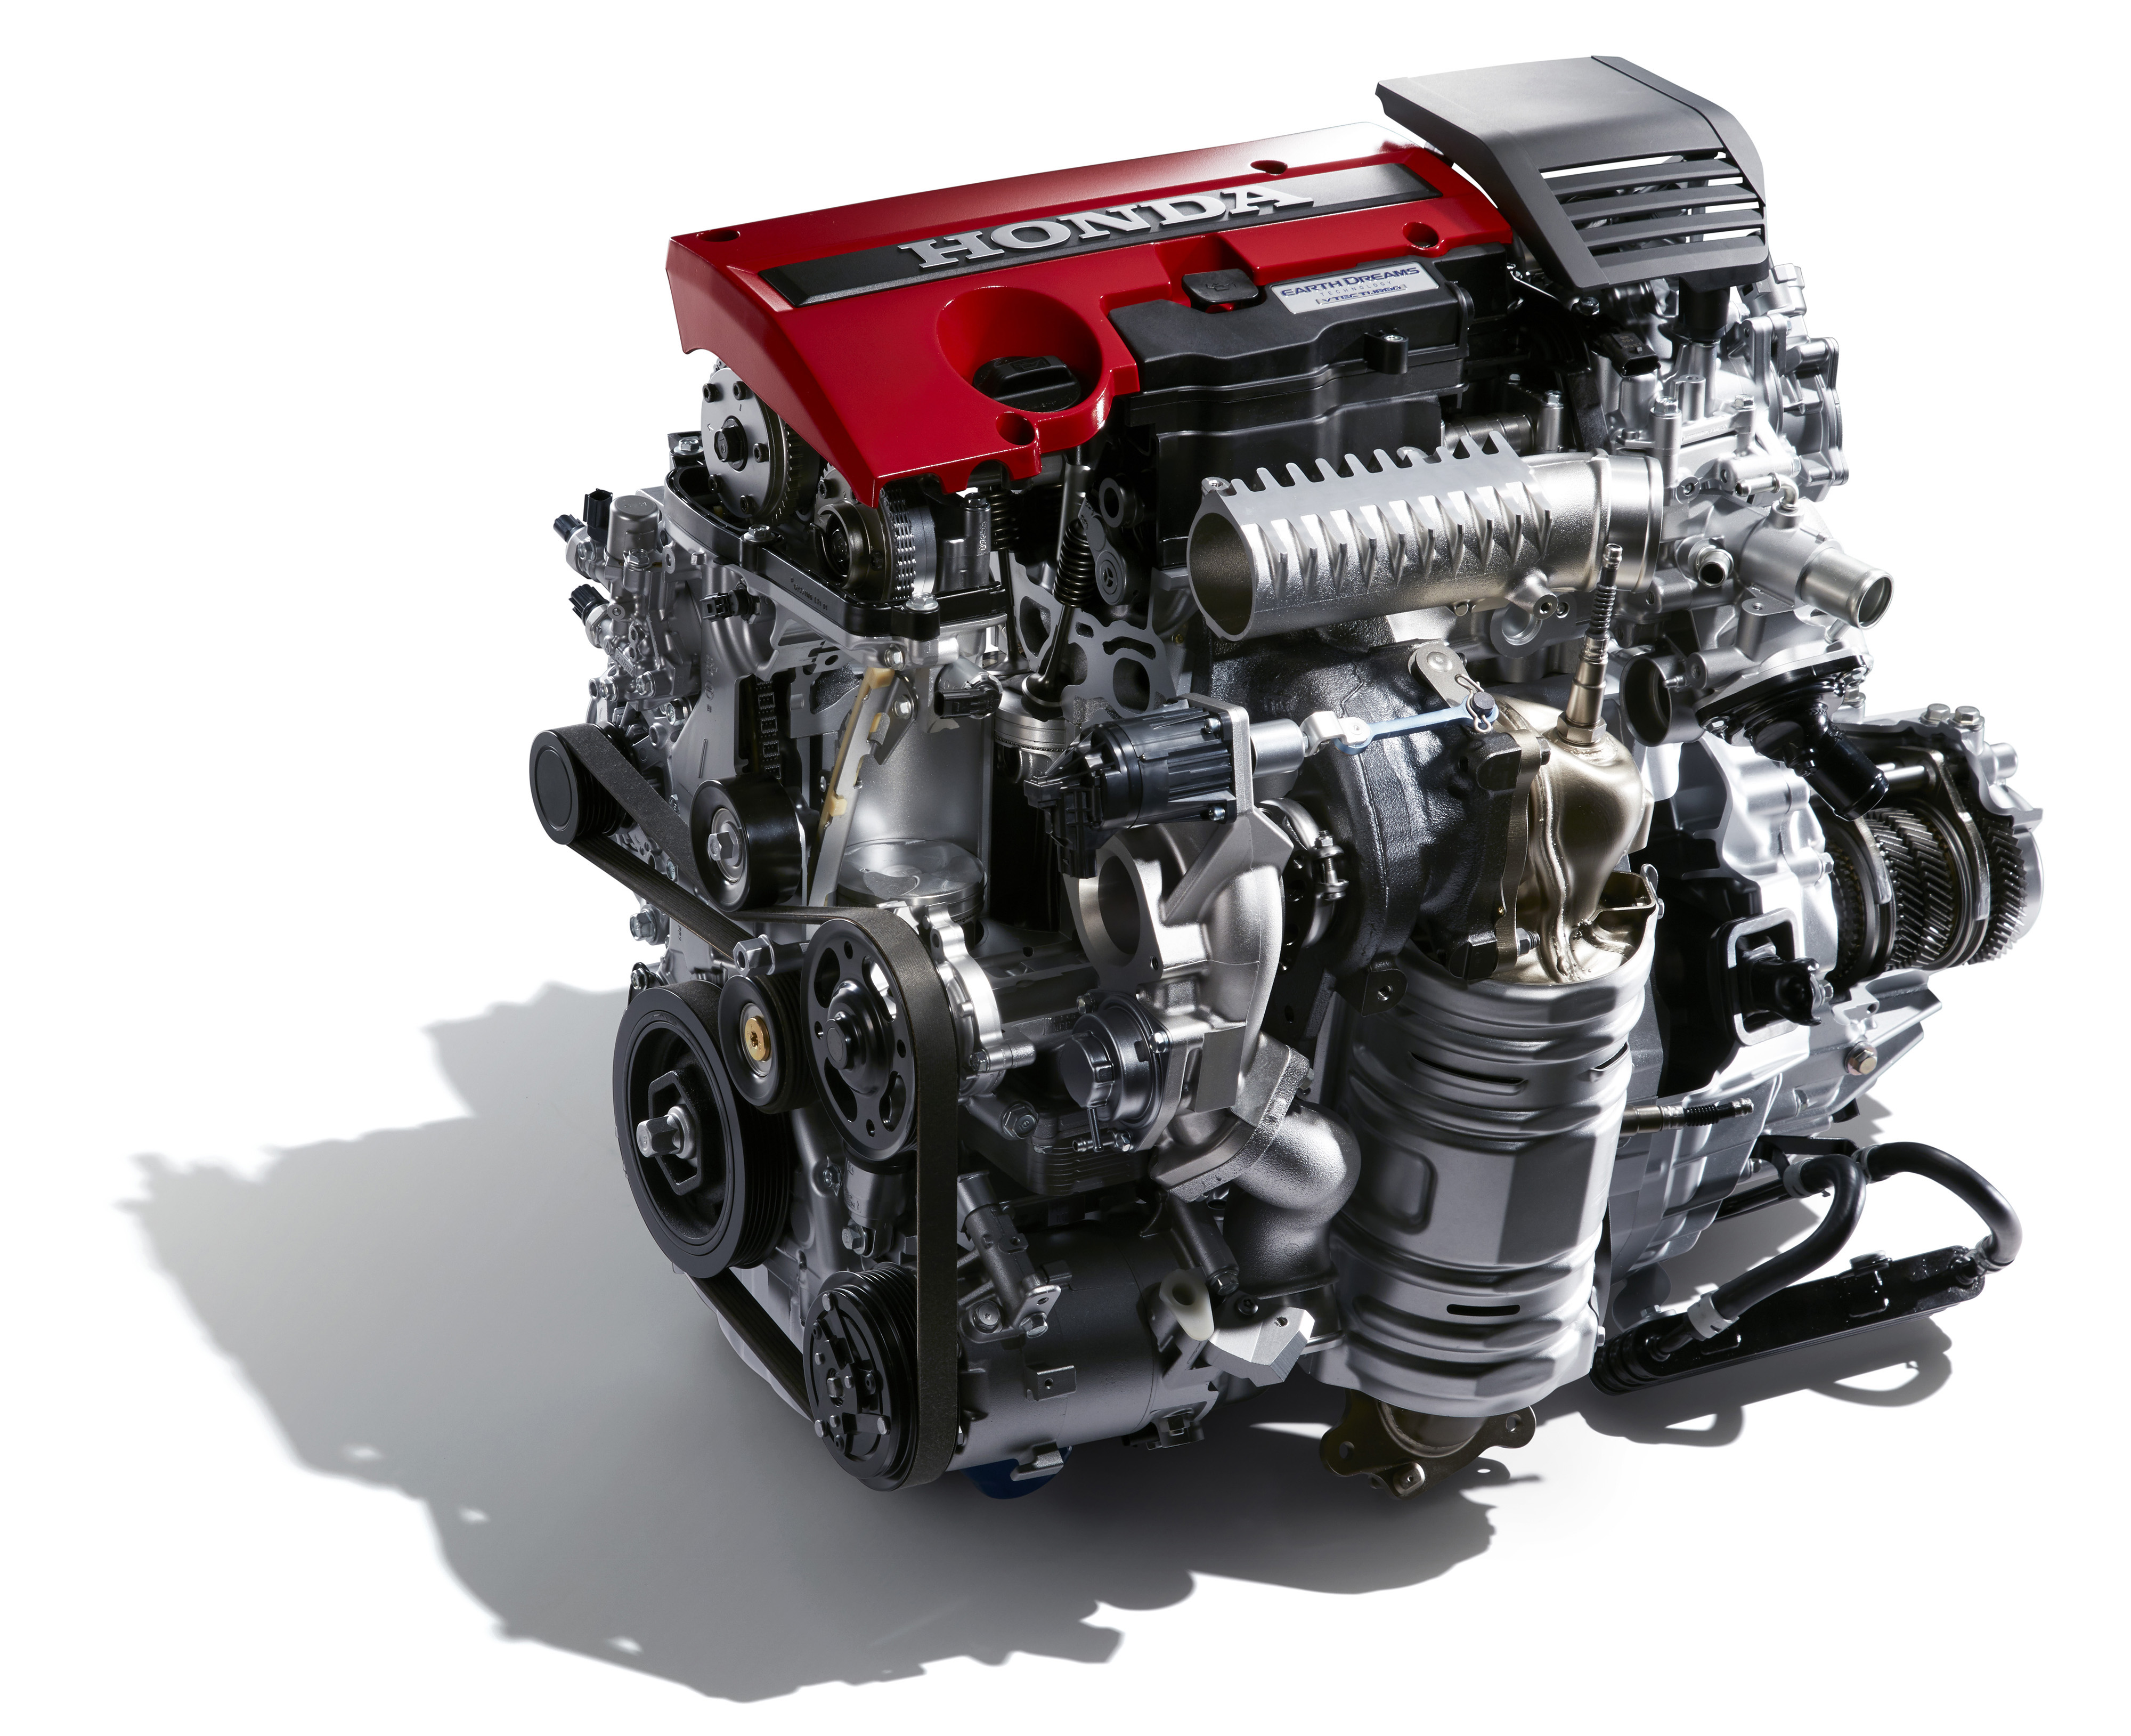 Honda v мотор. Хонда турбо 340 мотор. Хонда Цивик 2 литровый мотор. Honda Turbo 2.4. 2 Литровый турбо двигатель Хонда.